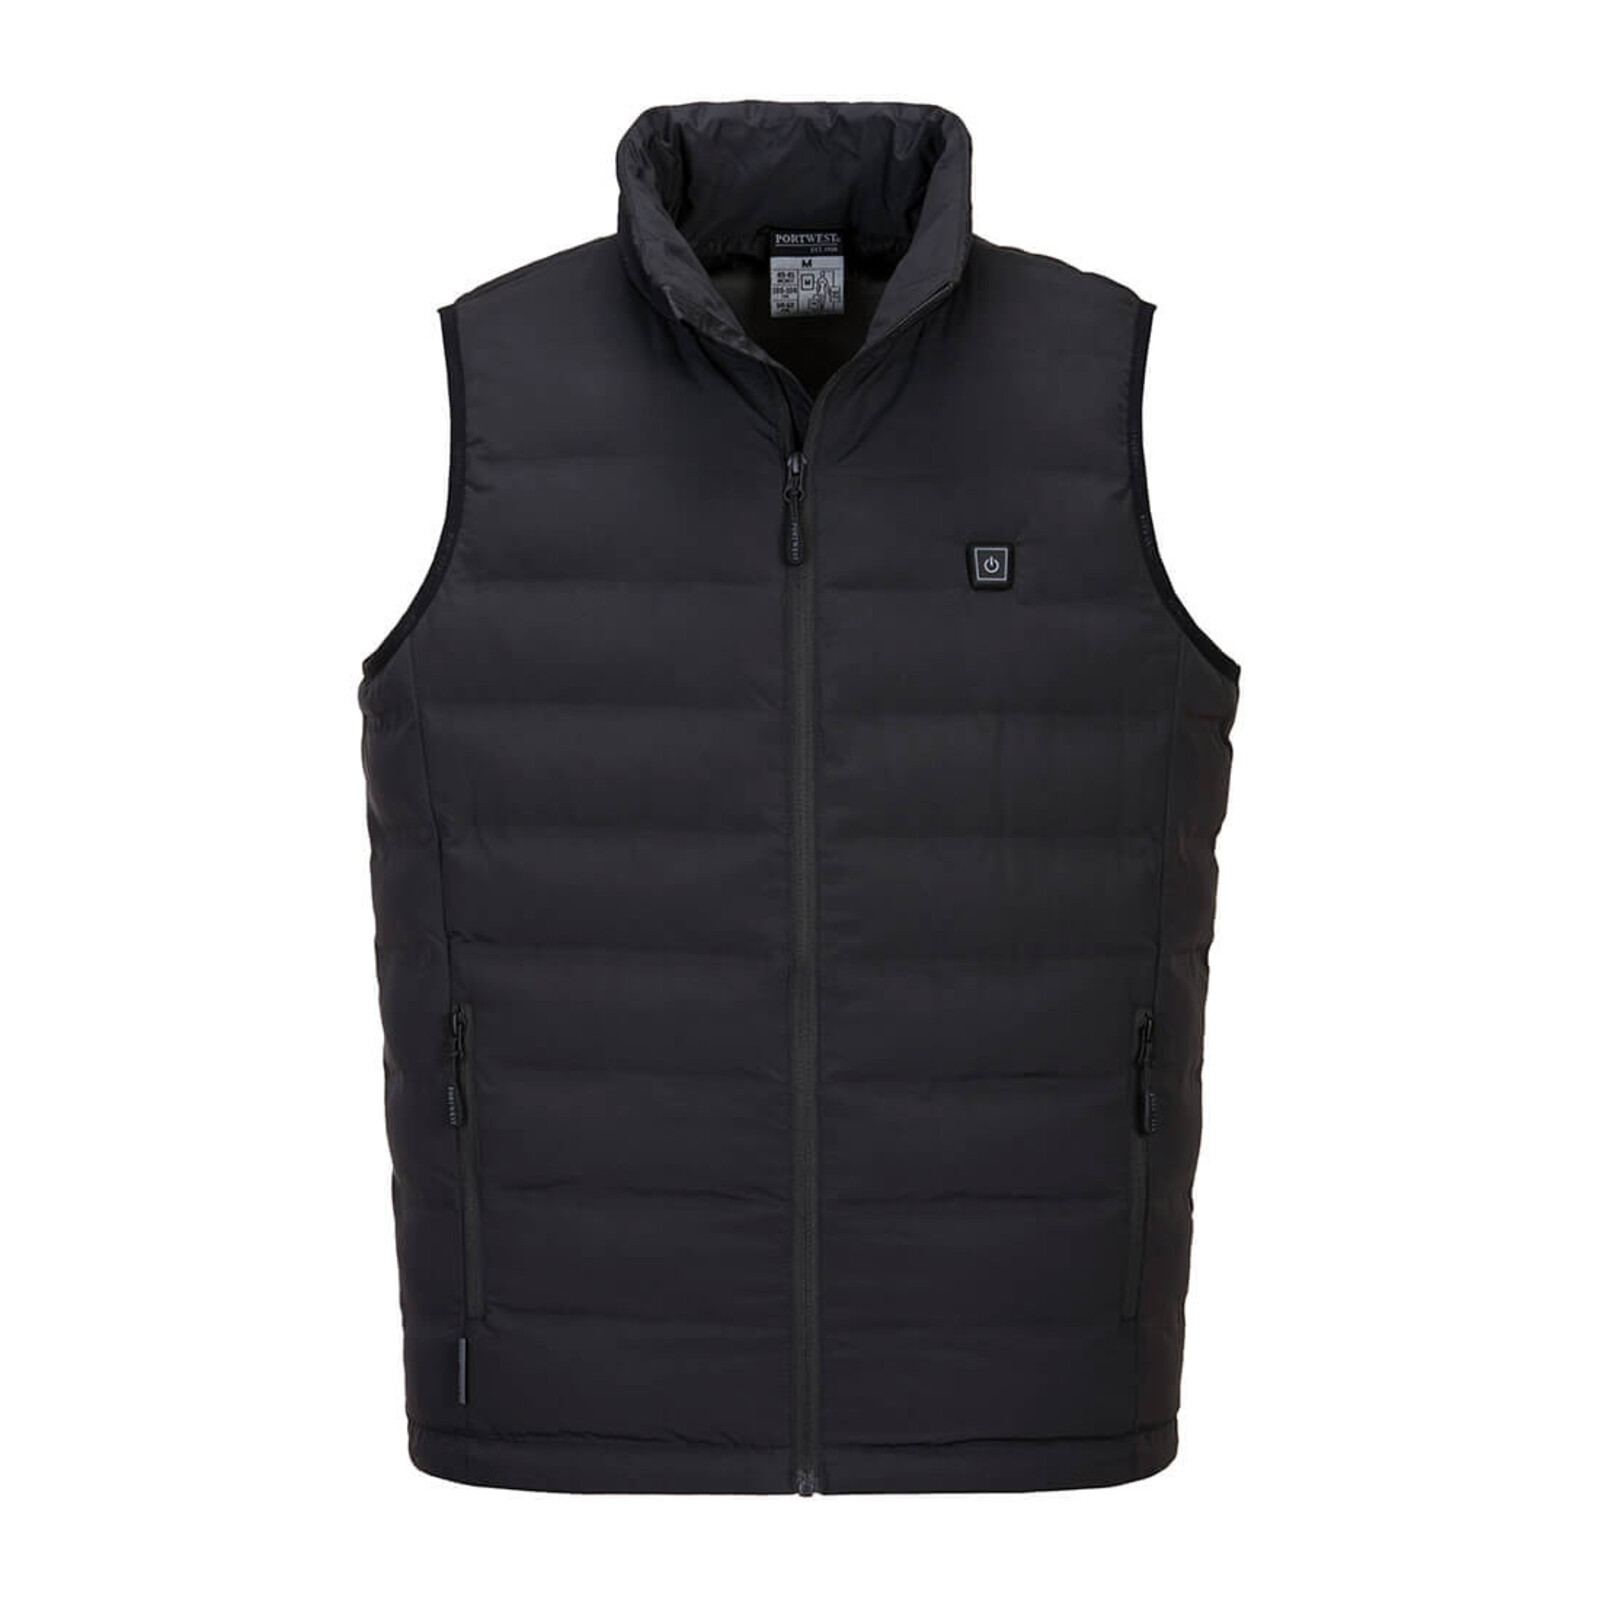 Vyhrievaná zimná vesta Portwest Ultrasonic S549  - veľkosť: M, farba: čierna